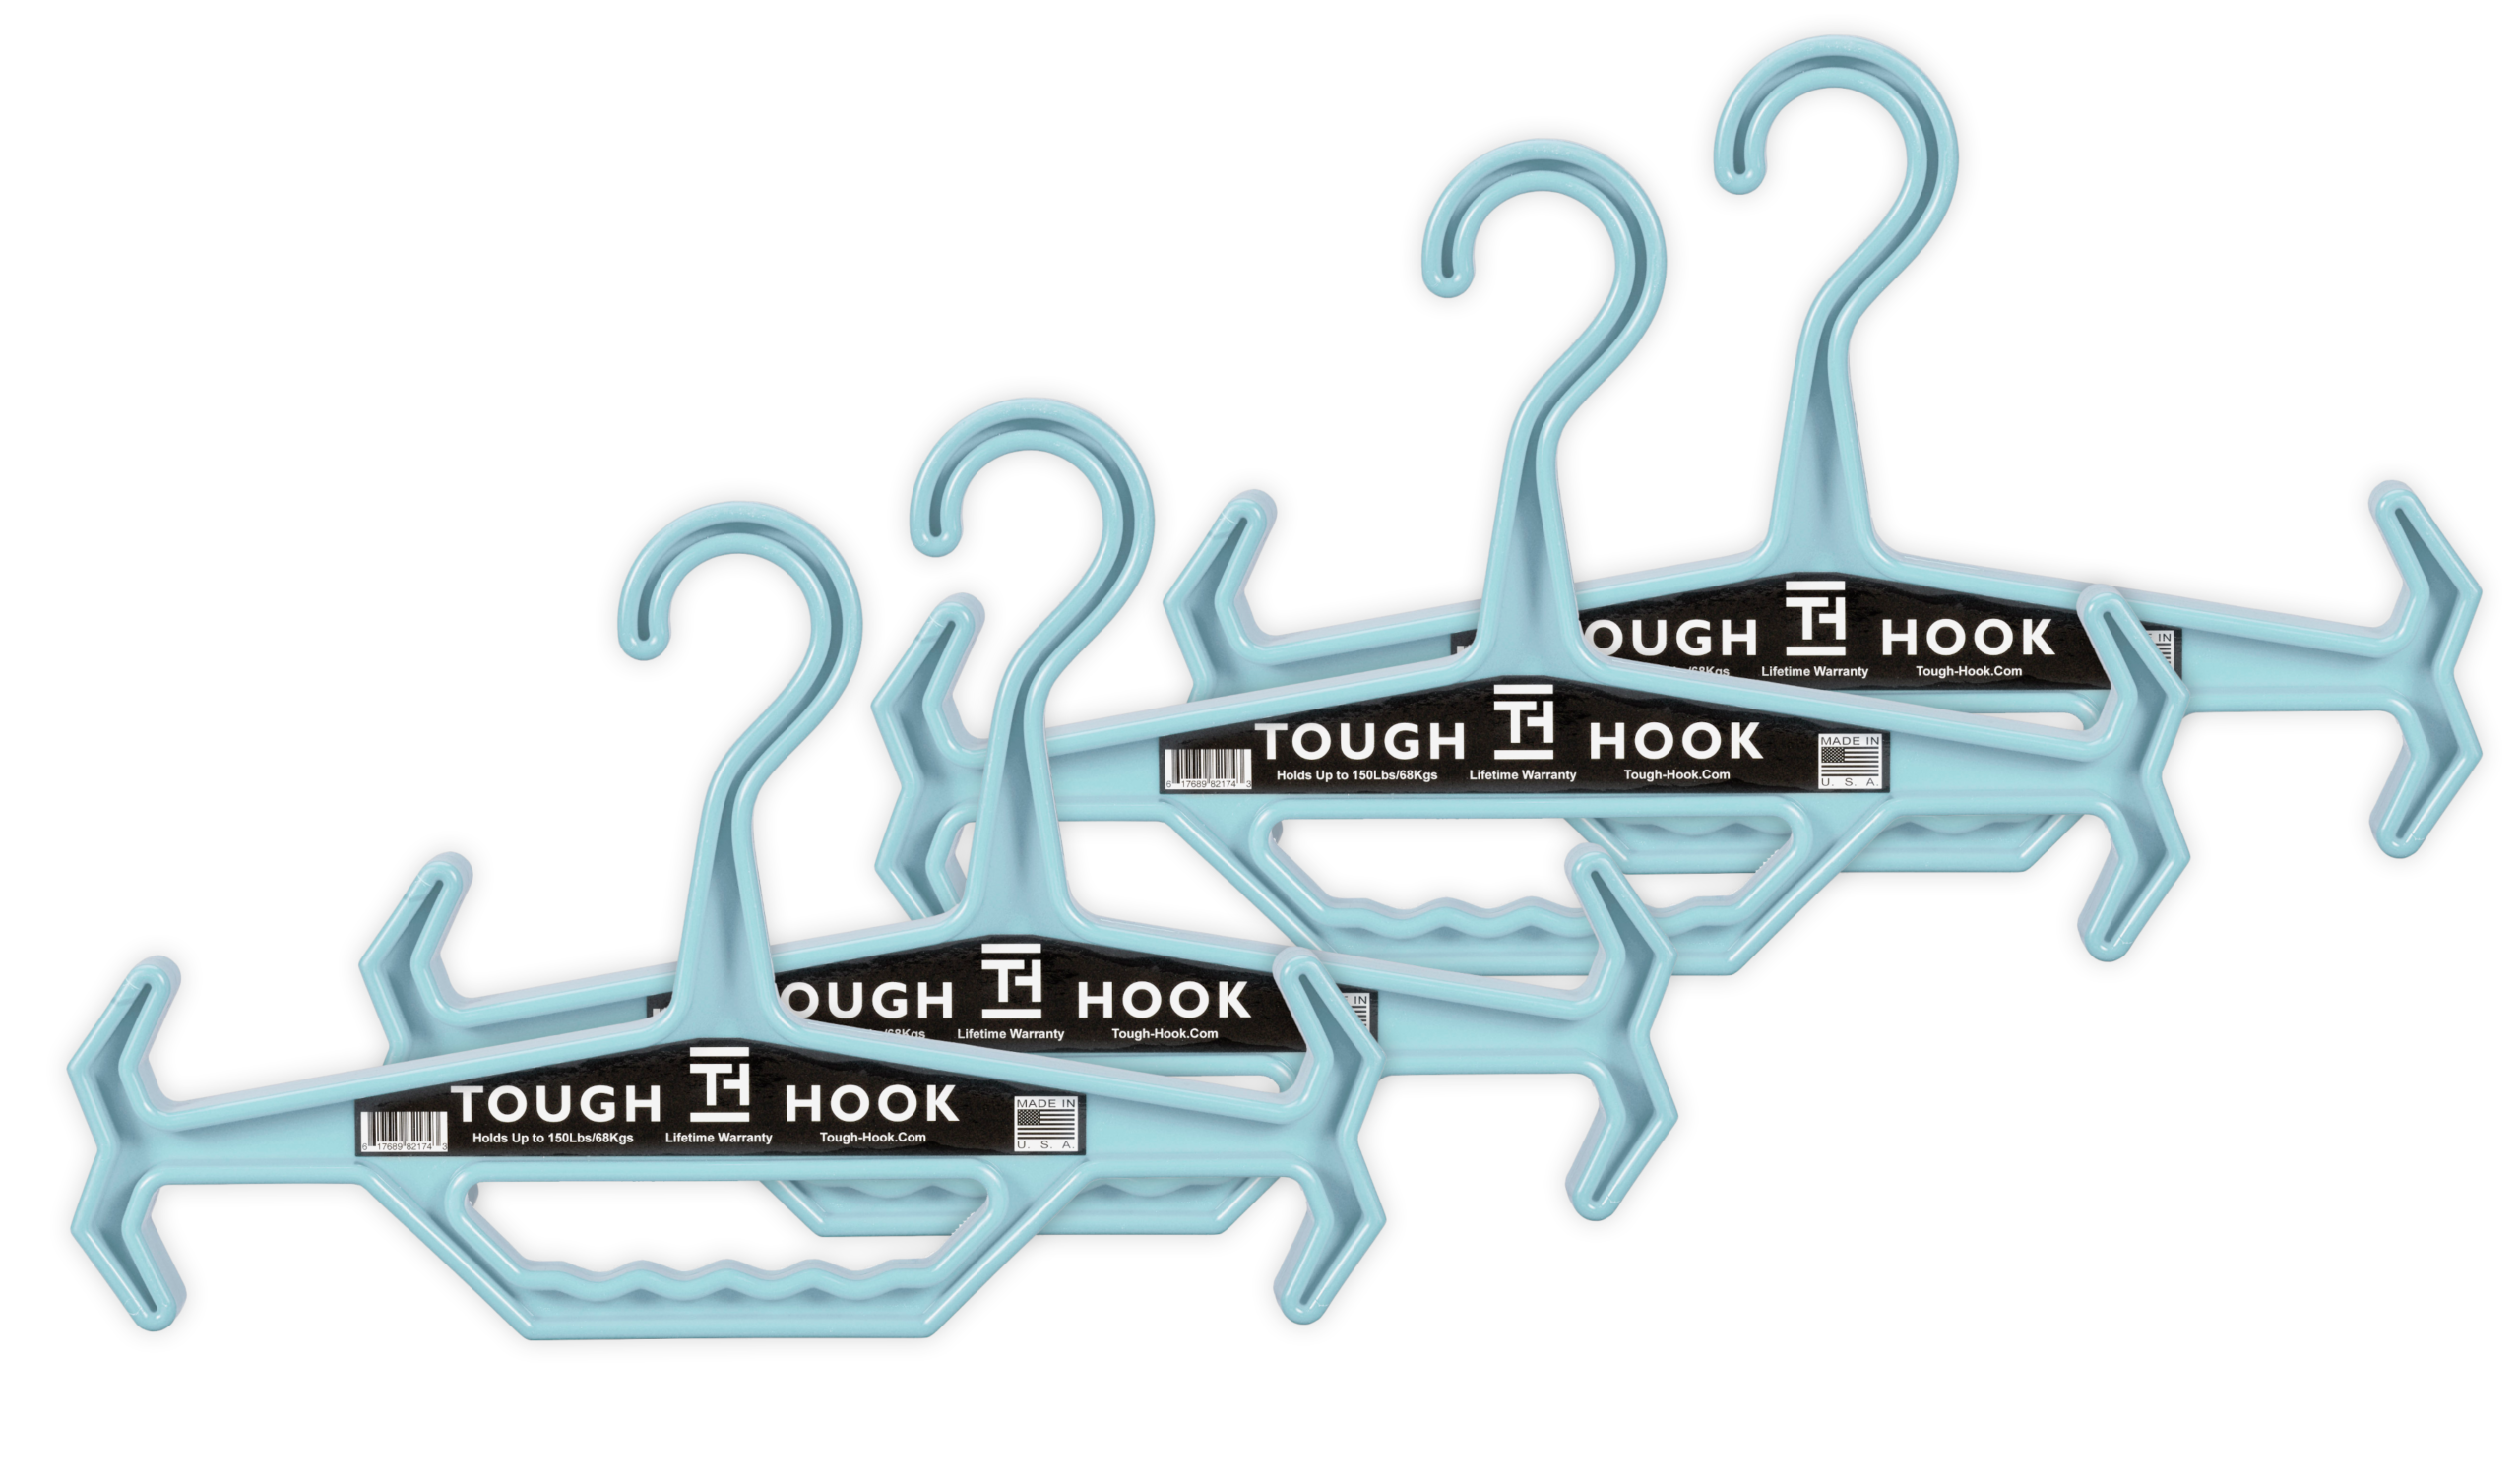 Original Tough Hook Hanger » Holds 200 Lbs » Tough Hook Hangers